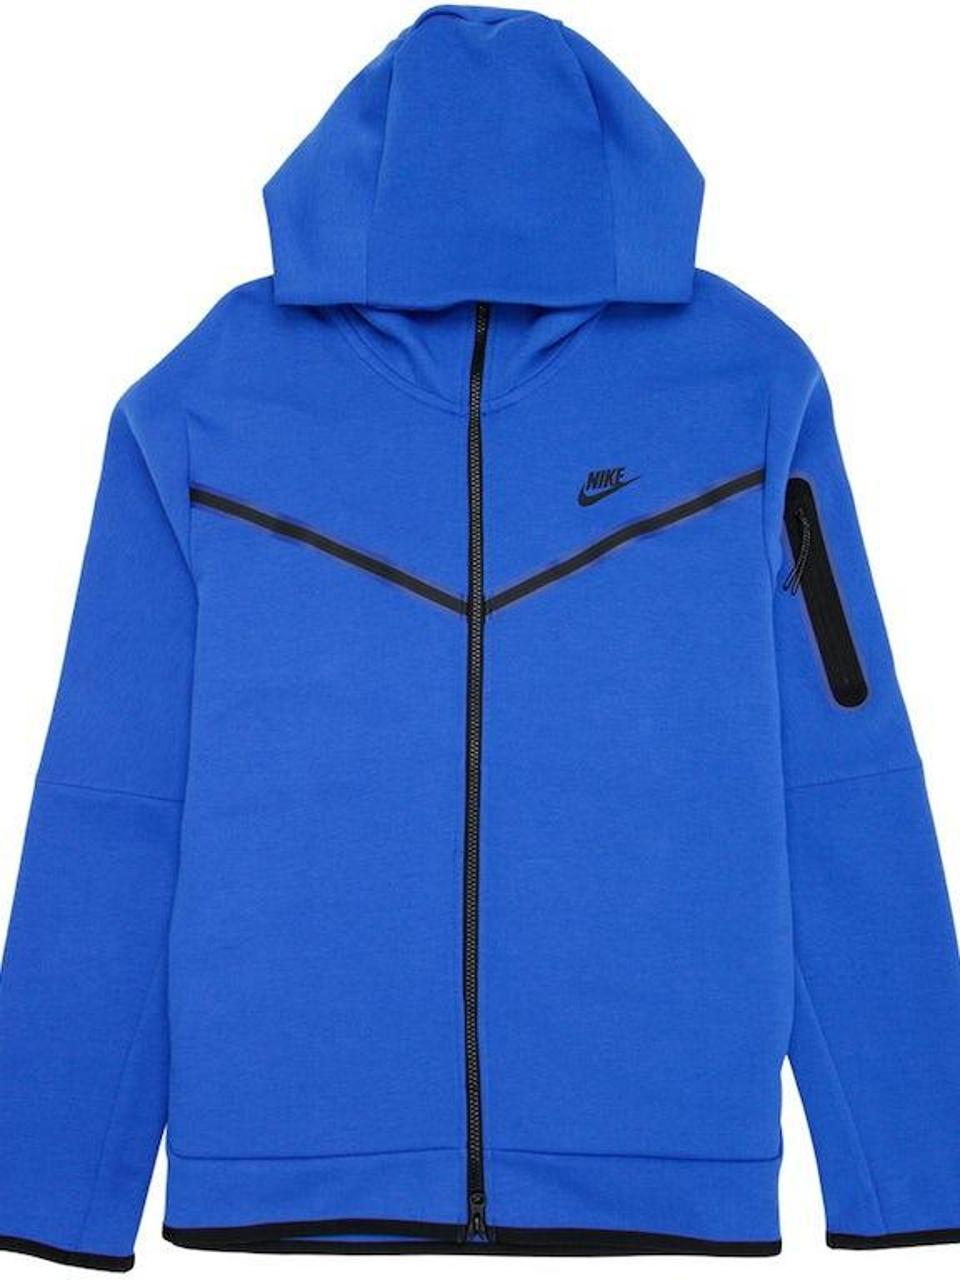 Nike Sportswear Men’s Royal Blue Tech Fleece... - Depop